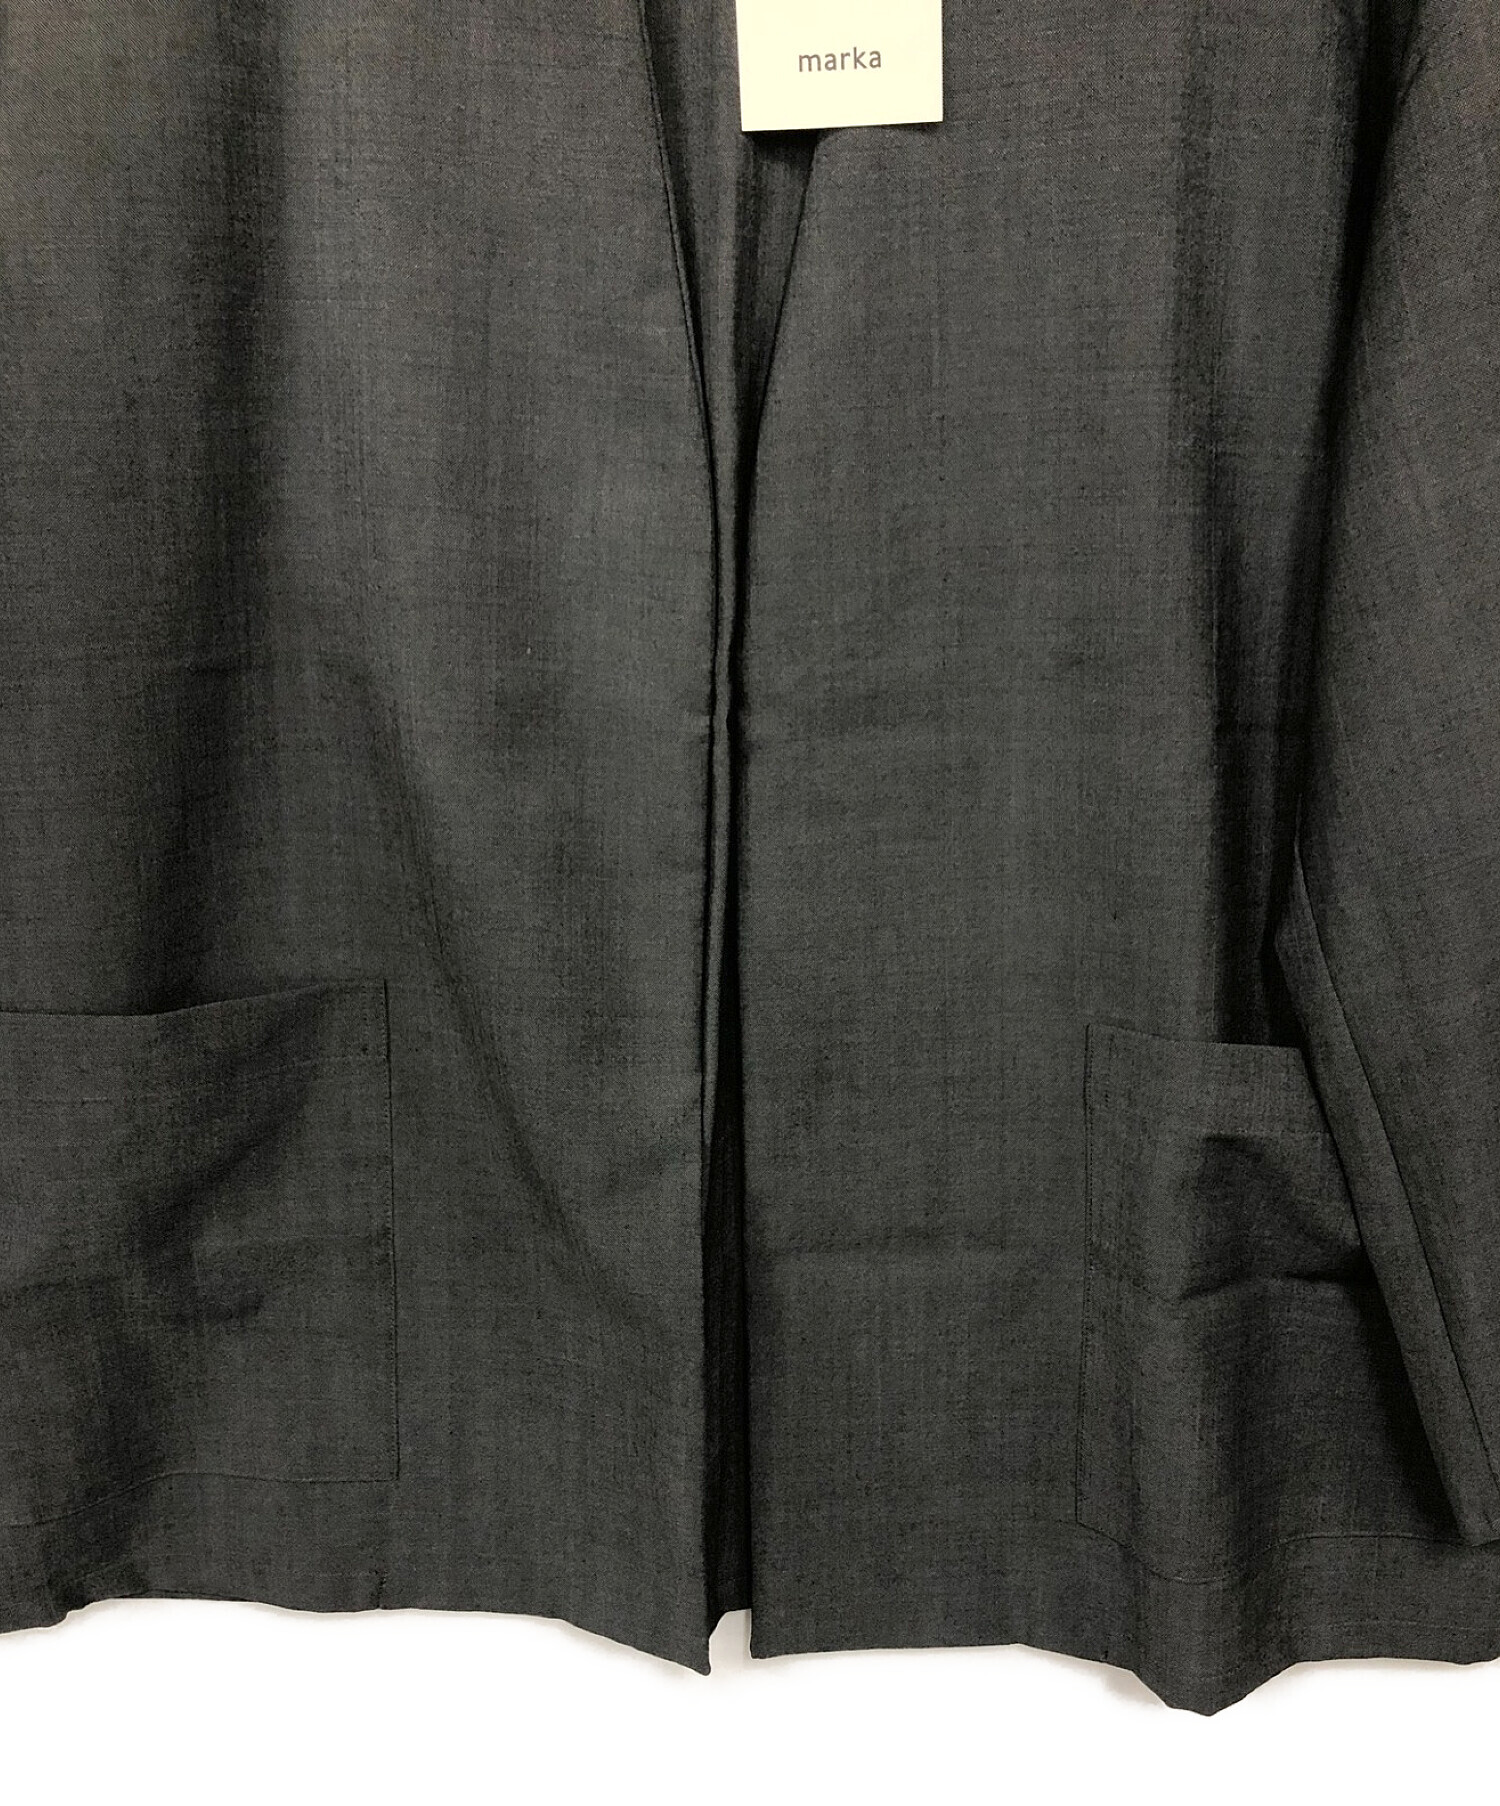 MARKA (マーカ) ラペルレスシャツジャケット グレー サイズ:2